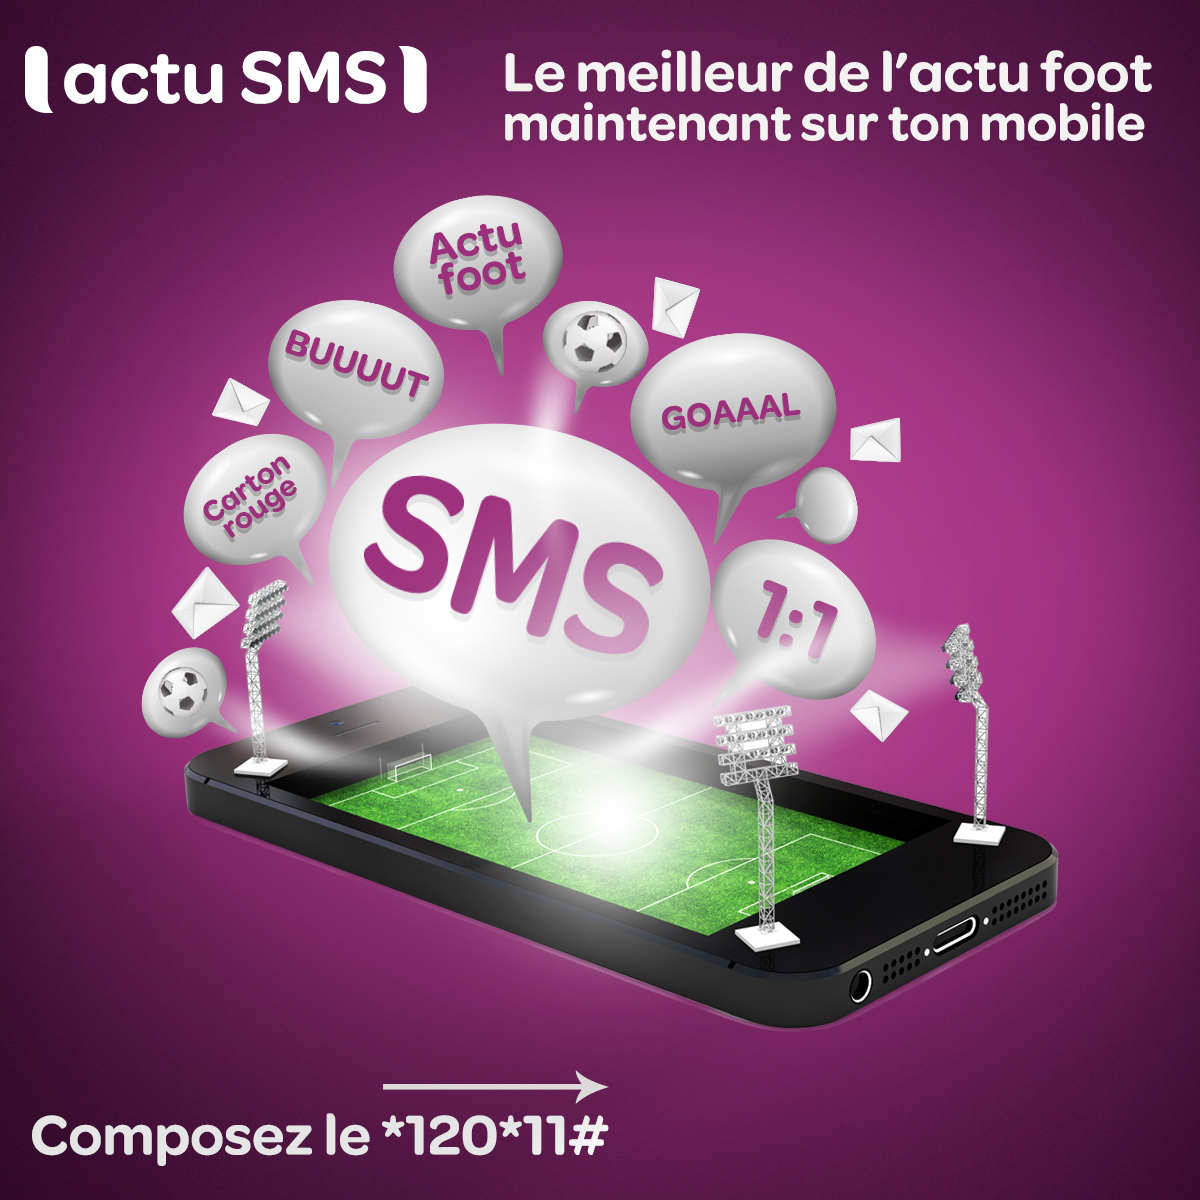 inwi phone service operator Maroc Casablanca actus iphone SMS